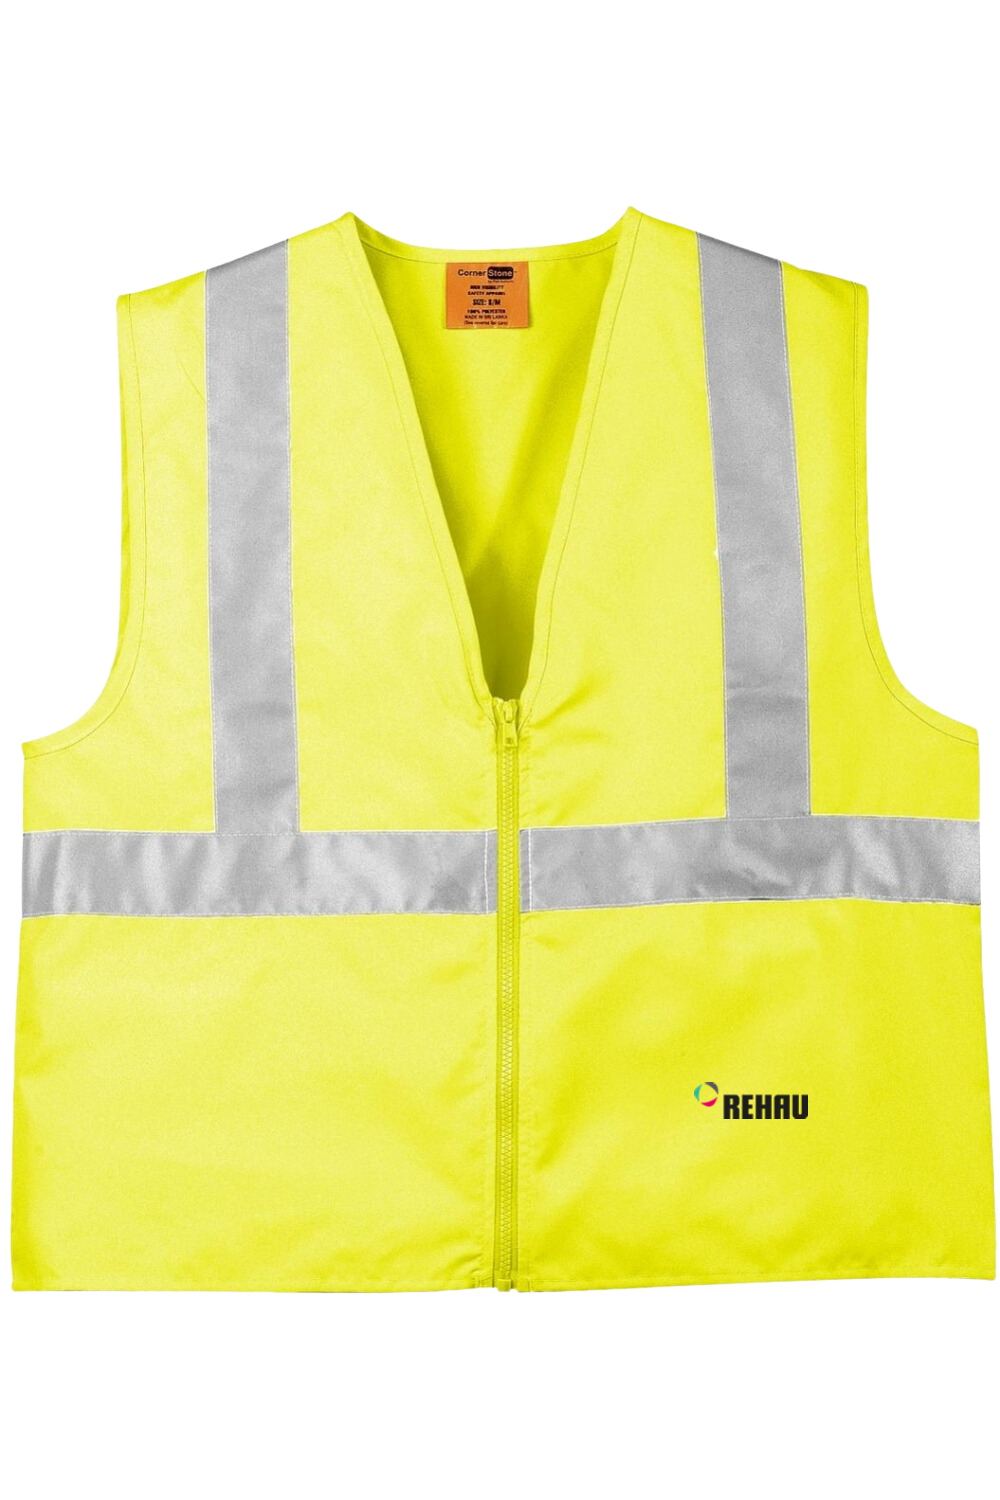 CornerStone ANSI 107 Class 2 Safety Vest